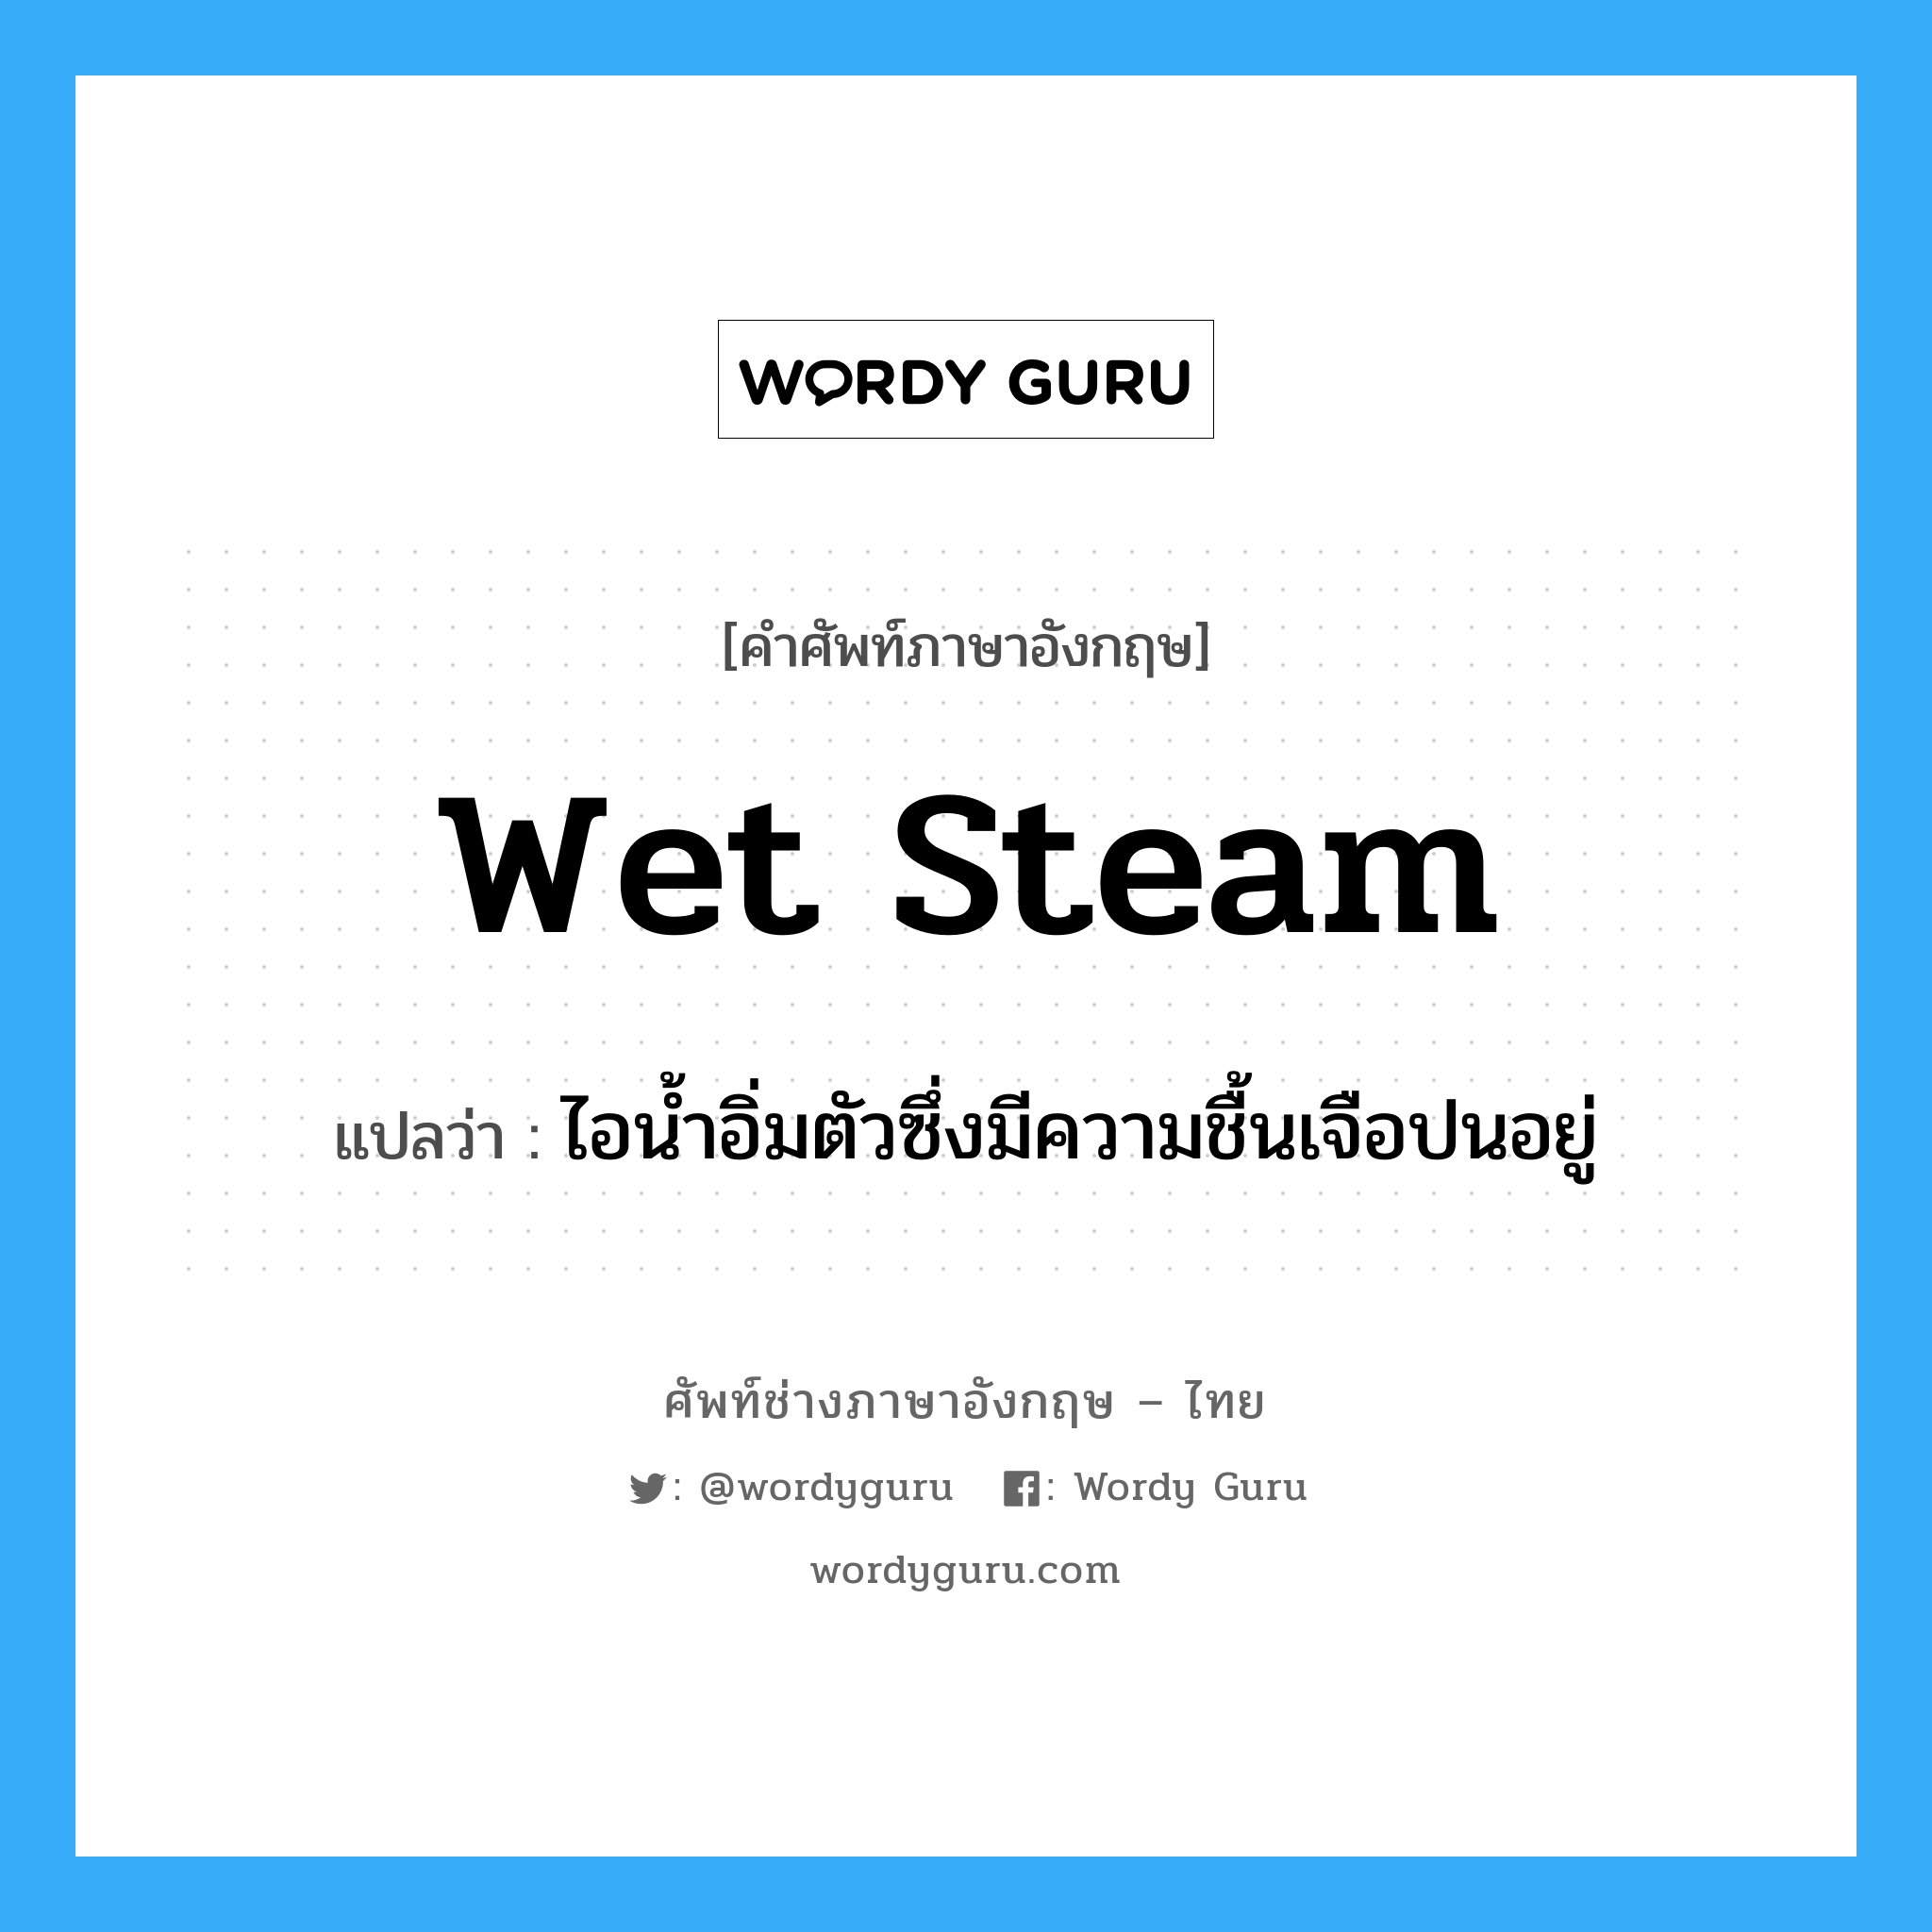 wet steam แปลว่า?, คำศัพท์ช่างภาษาอังกฤษ - ไทย wet steam คำศัพท์ภาษาอังกฤษ wet steam แปลว่า ไอน้ำอิ่มตัวซึ่งมีความชื้นเจือปนอยู่